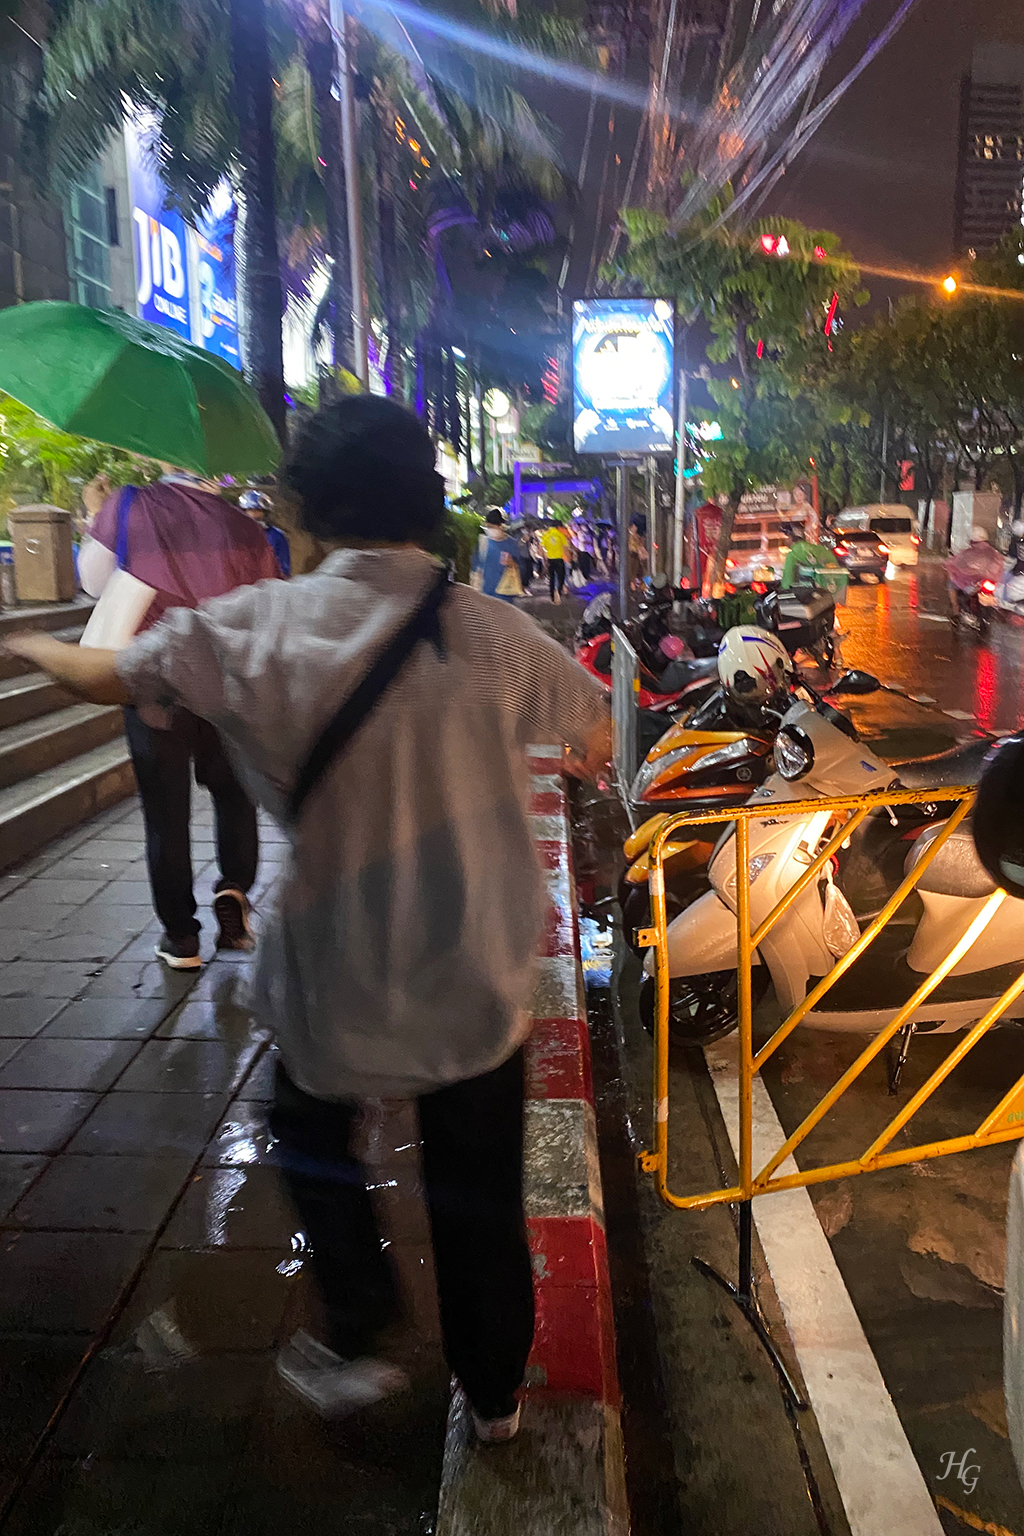 태국 방콕 쩟페어 야시장 (Jodd Fairs / จ๊อด แฟร์)에서 비 맞으며 귀가 중